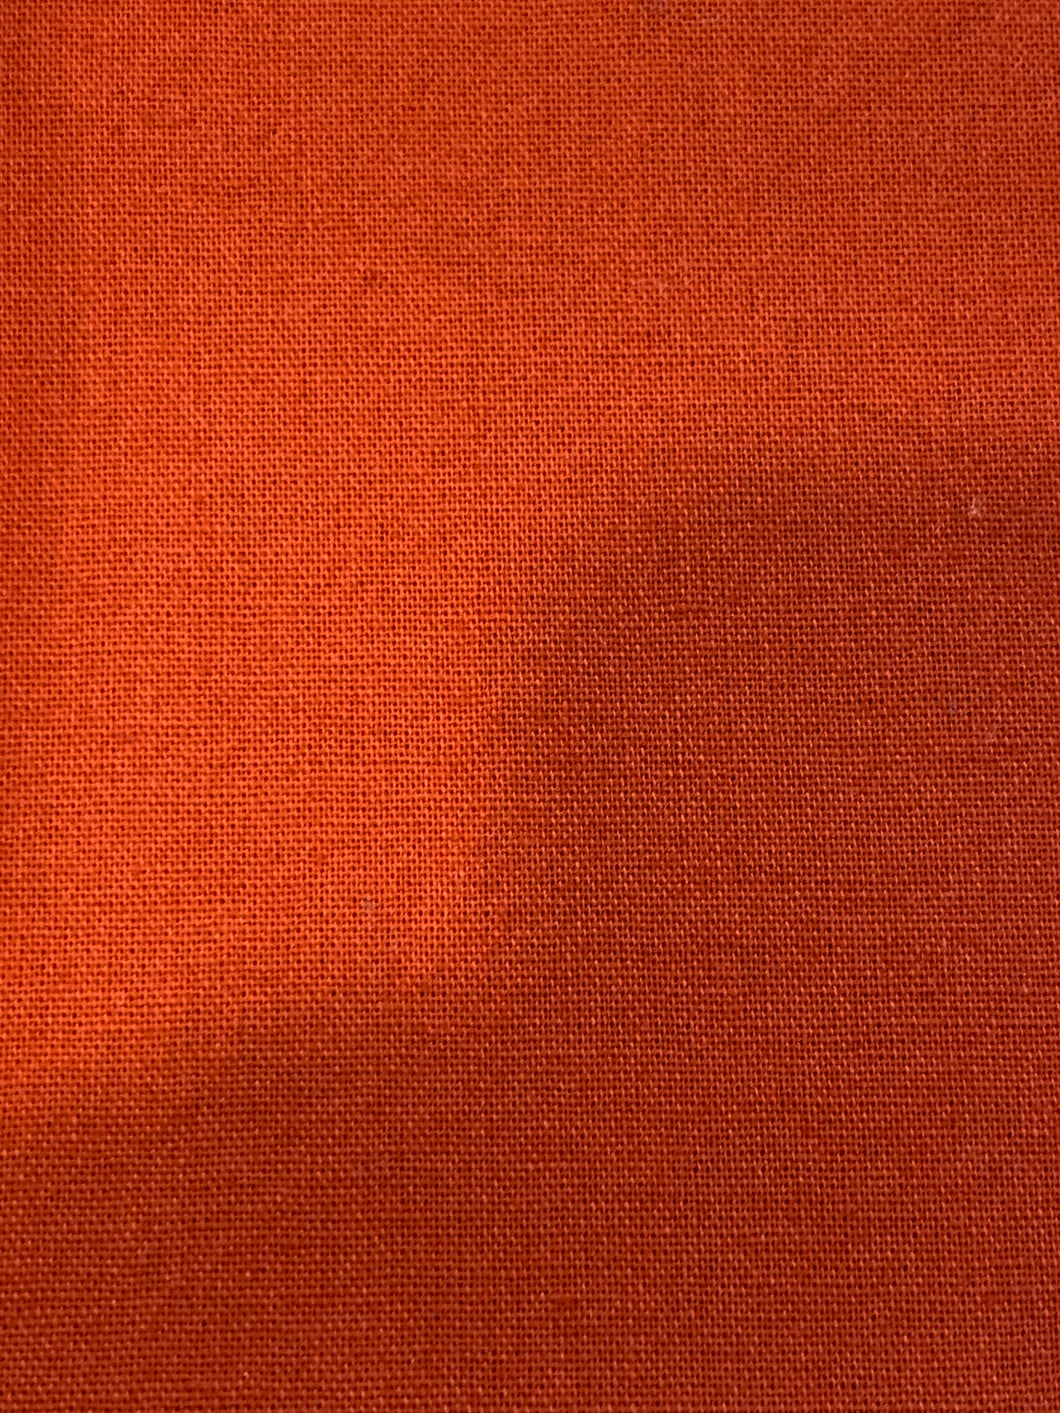 3-6  - Burnt Orange